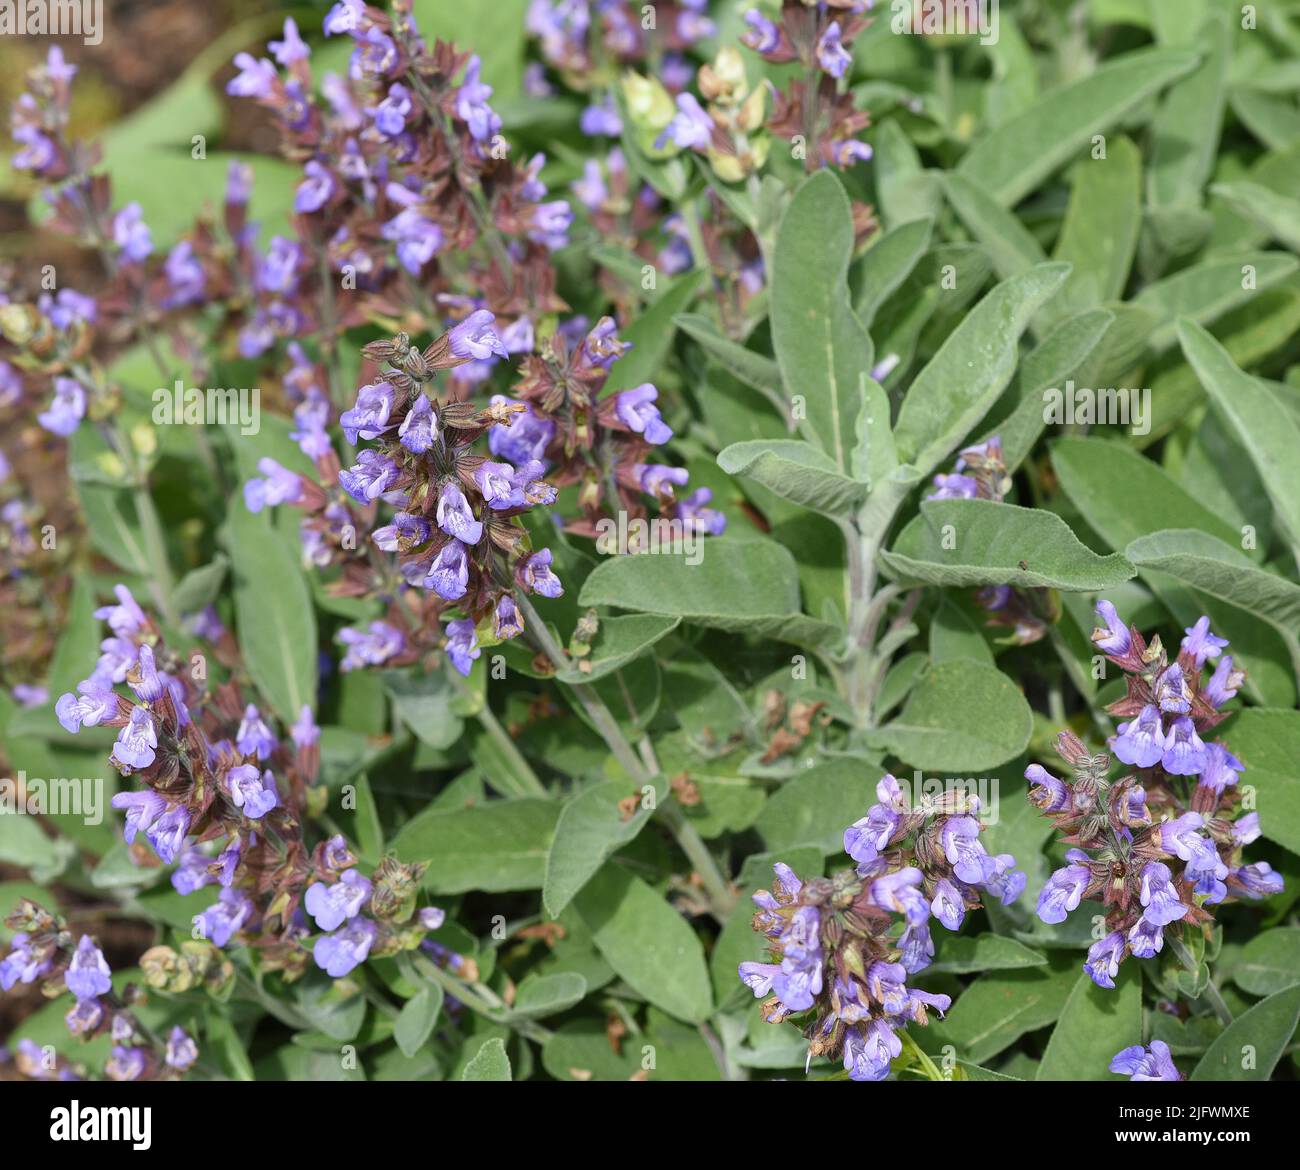 Salbei, Salvia officinalis, ist eine wichtige Heilpflanze und eine Duftpflanze mit blauen Blueten. Sie ist eine schoene Staude und wird auch in der Ku Stock Photo